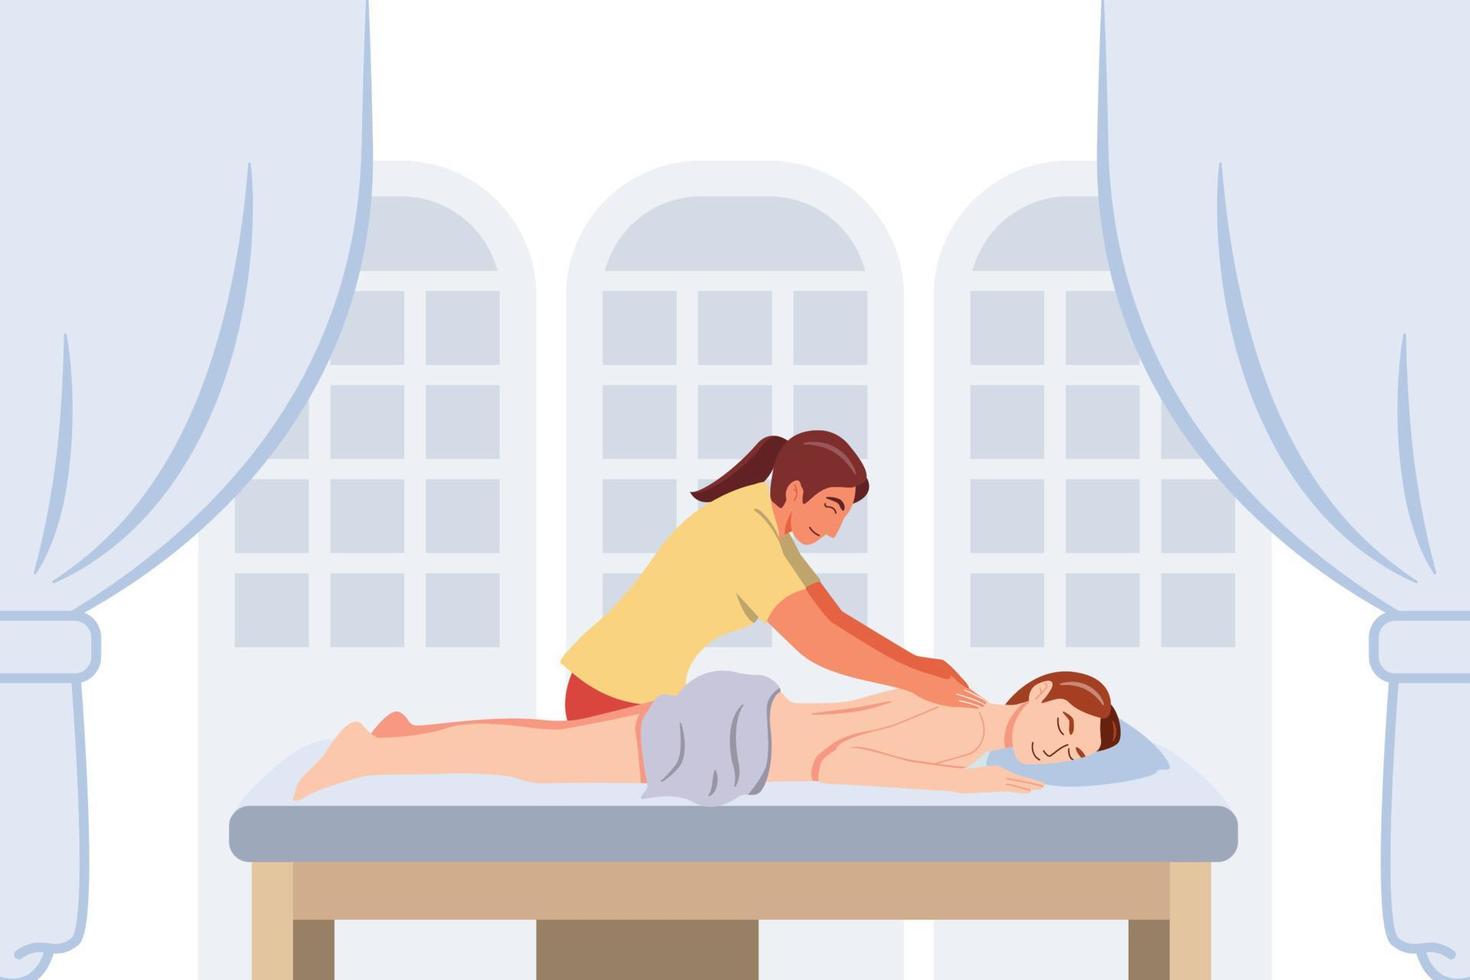 donna rilassata che ottiene massaggio alla schiena nella spa con massaggiatore professionista. benessere, illustrazione vettoriale di personaggi dei cartoni animati.